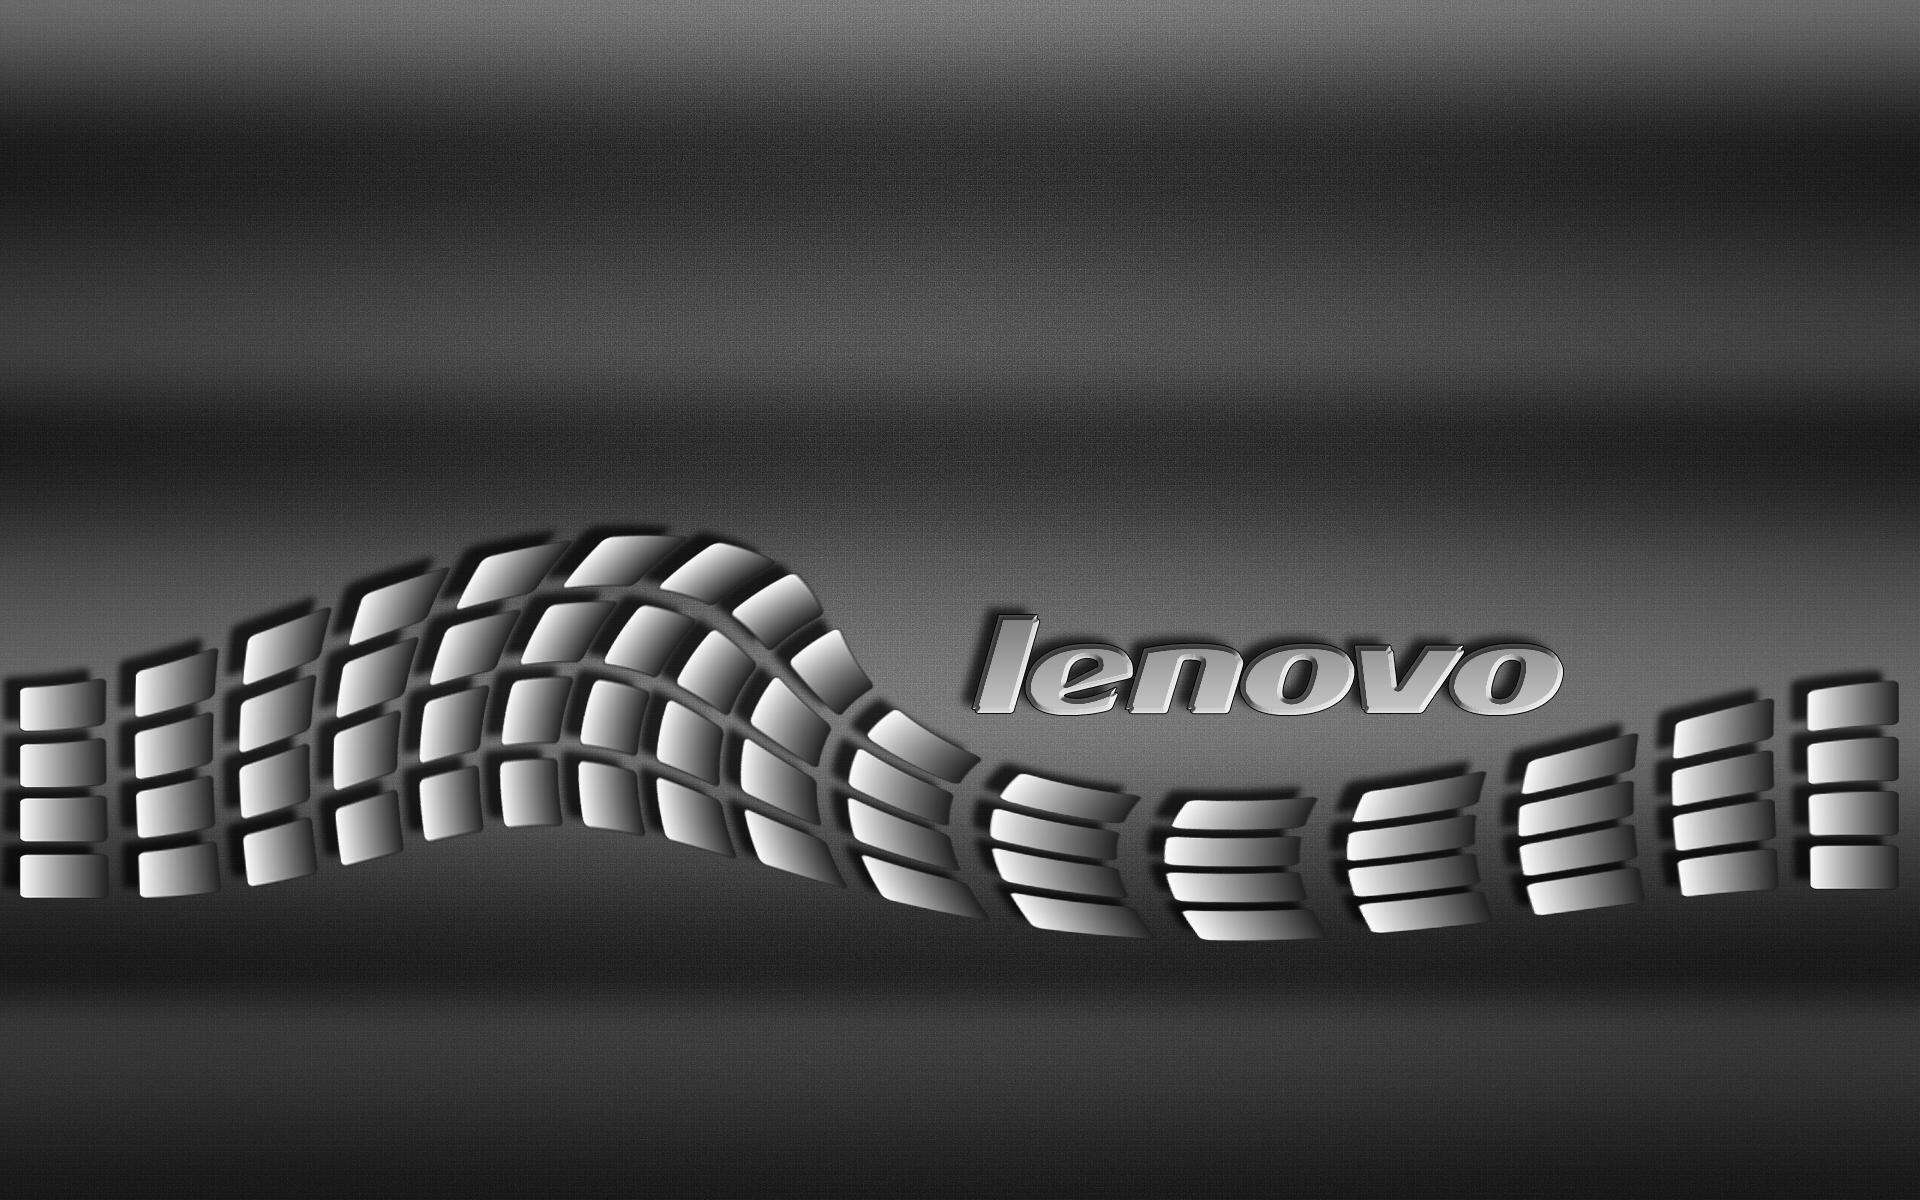 Lenovo Live Wallpaper - Fondos De Pantalla Hd Lenovo - HD Wallpaper 